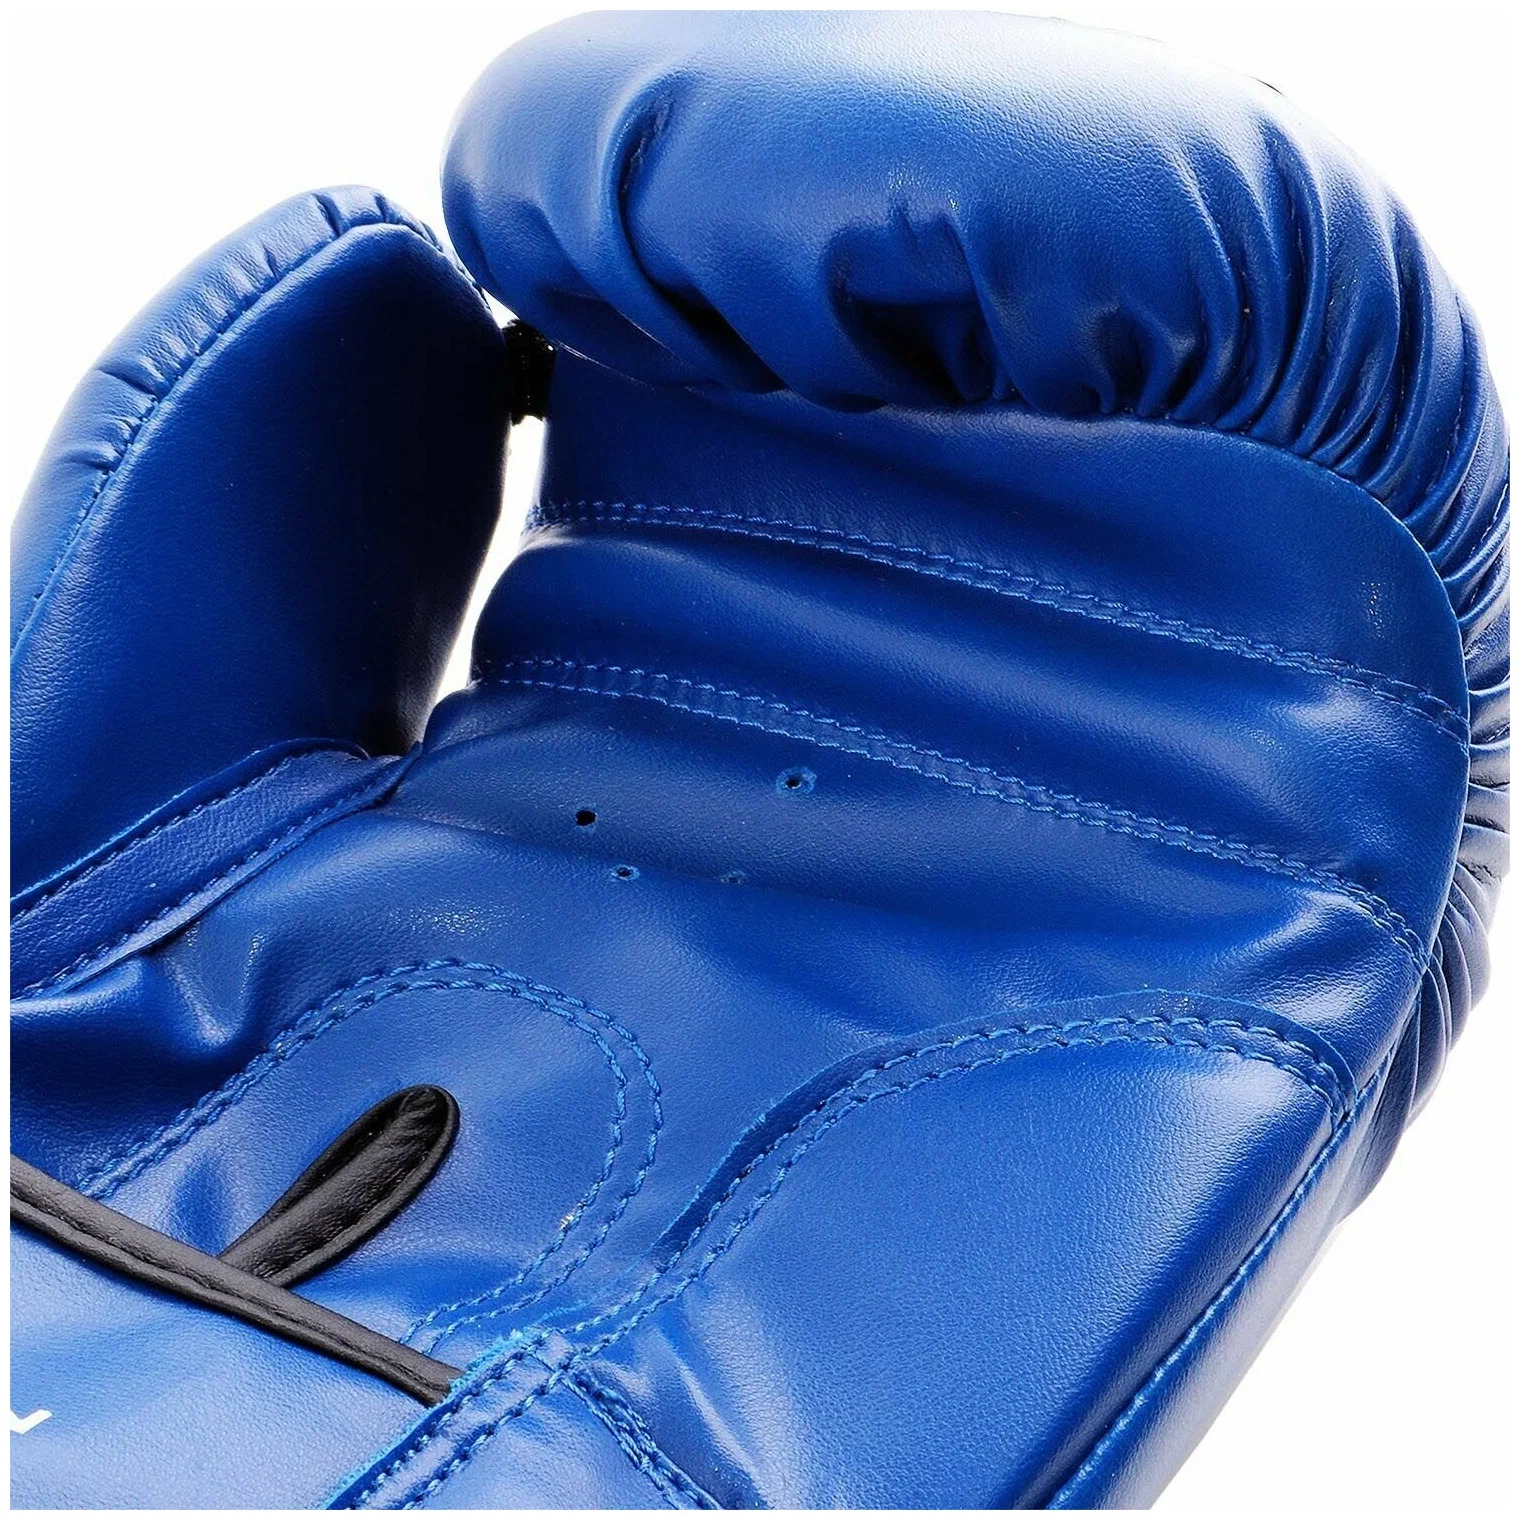 Реальное фото Перчатки боксерские Uppercot UBG-02 DX синий от магазина СпортСЕ